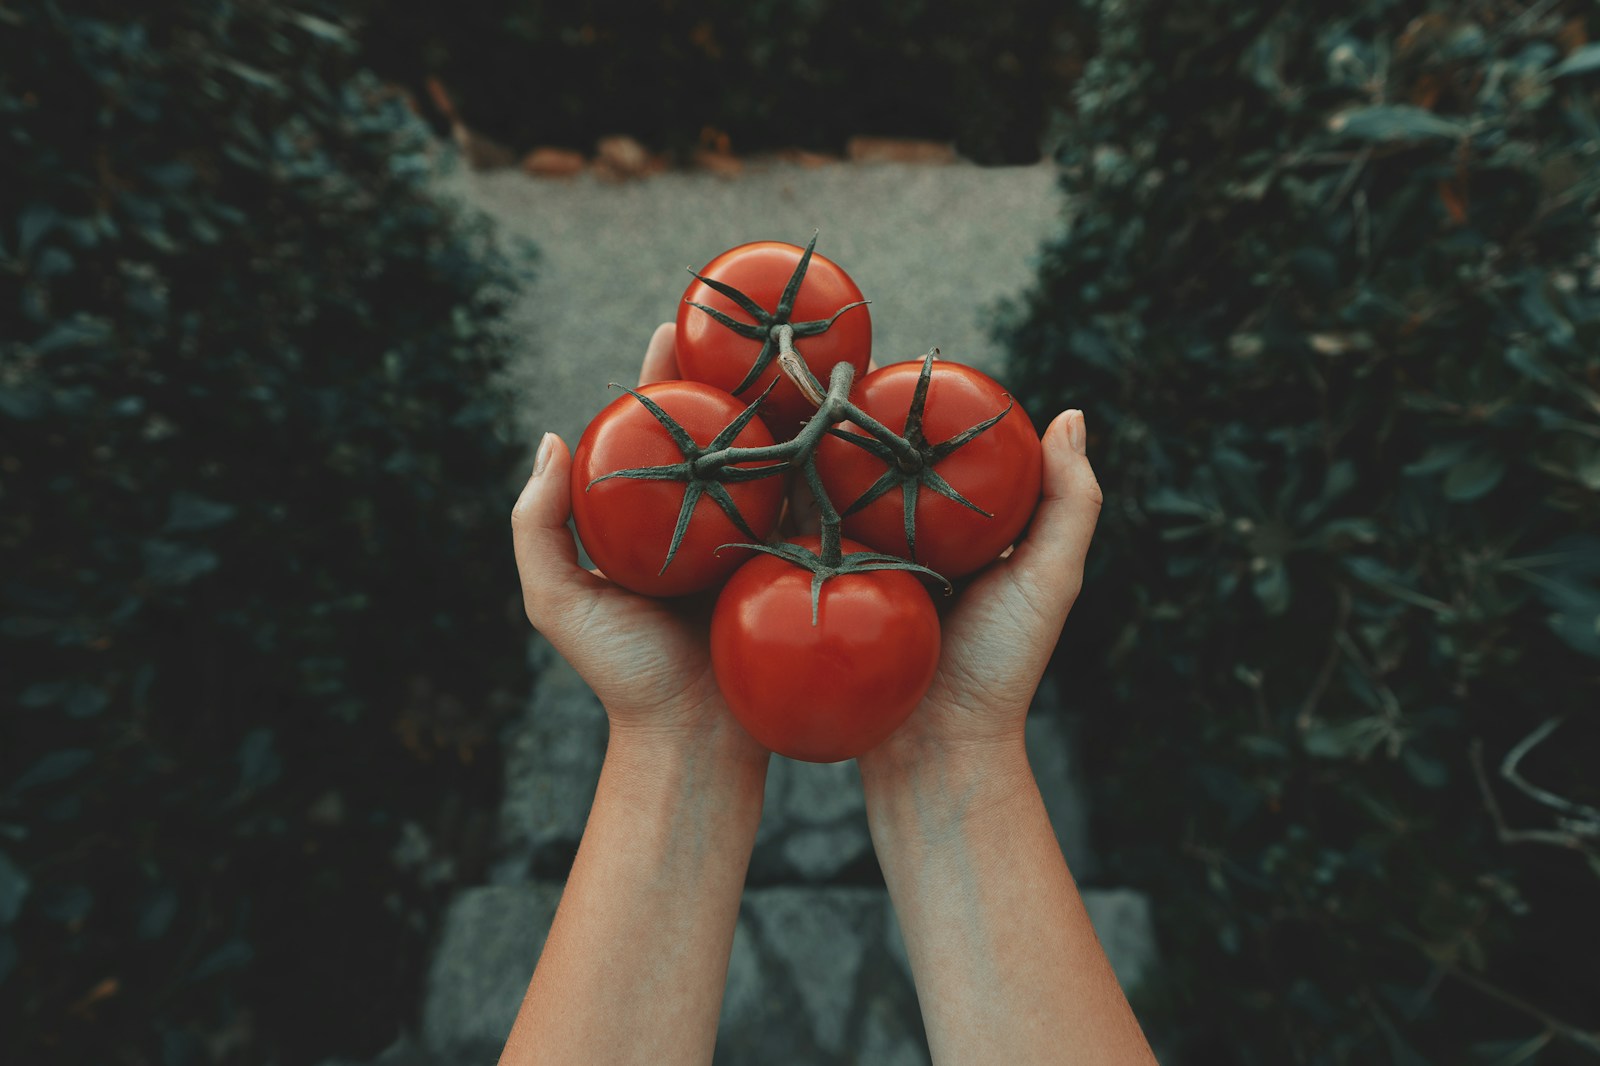 Jak szybko obrać pomidory ze skórki?